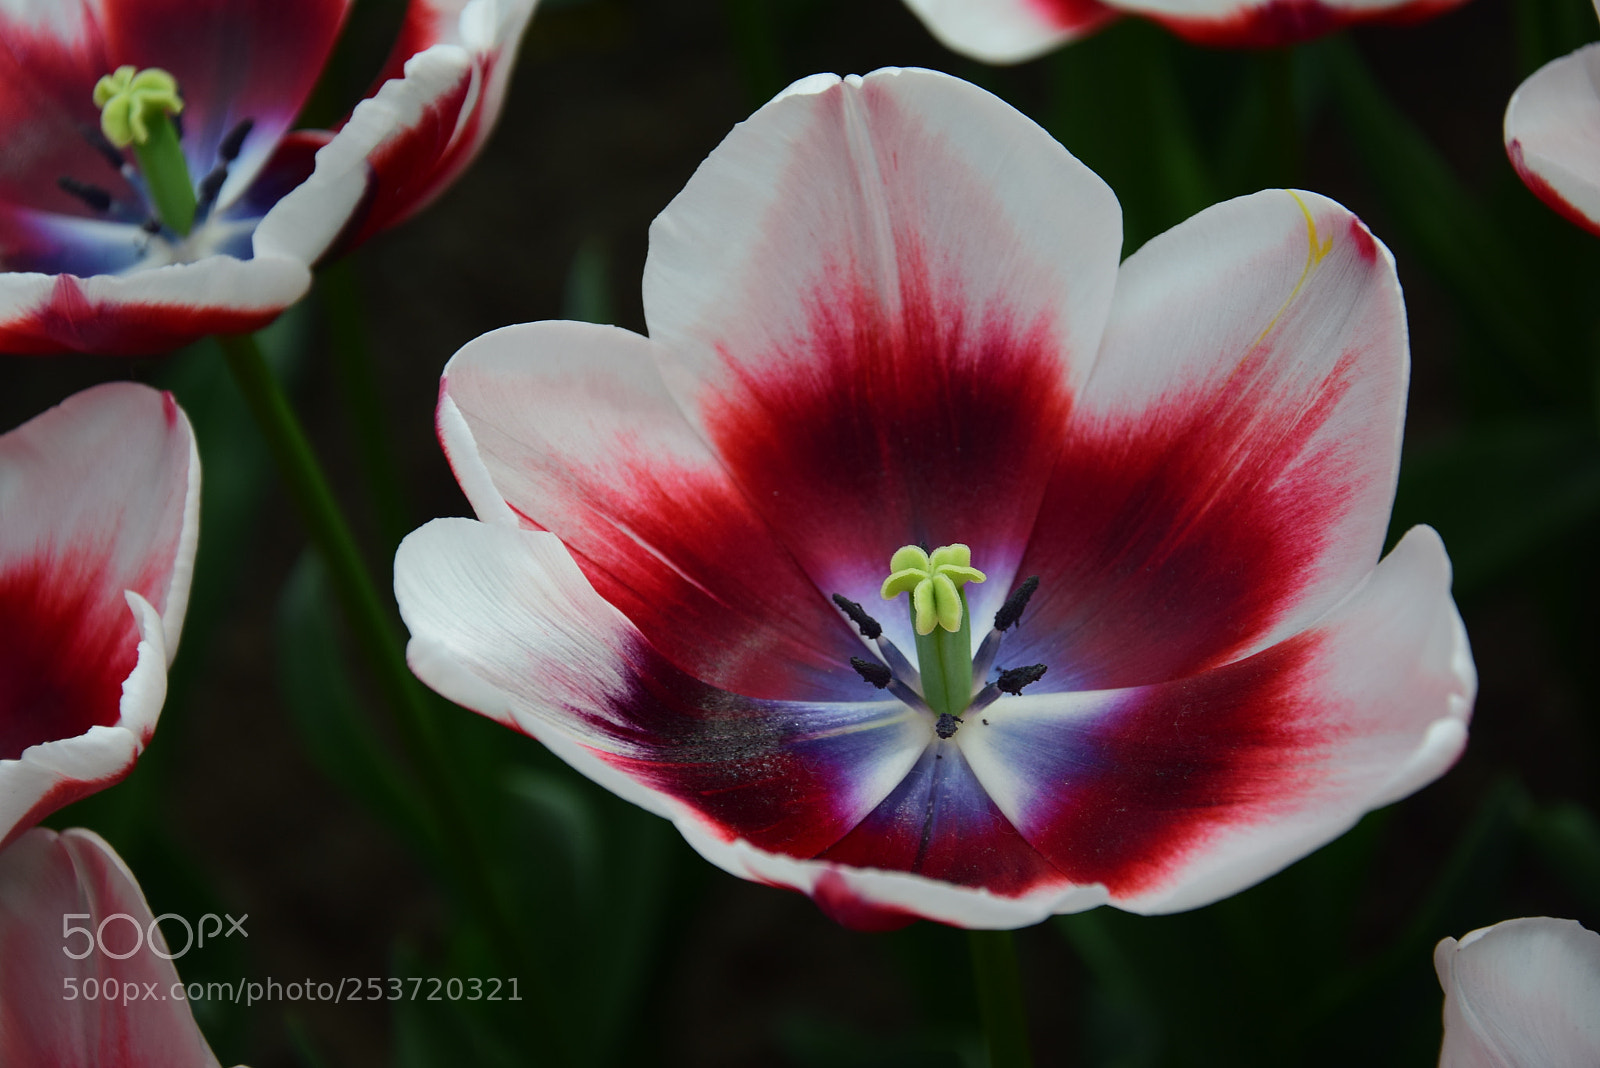 Nikon D5300 sample photo. Close up tulip / springtime 2018 photography